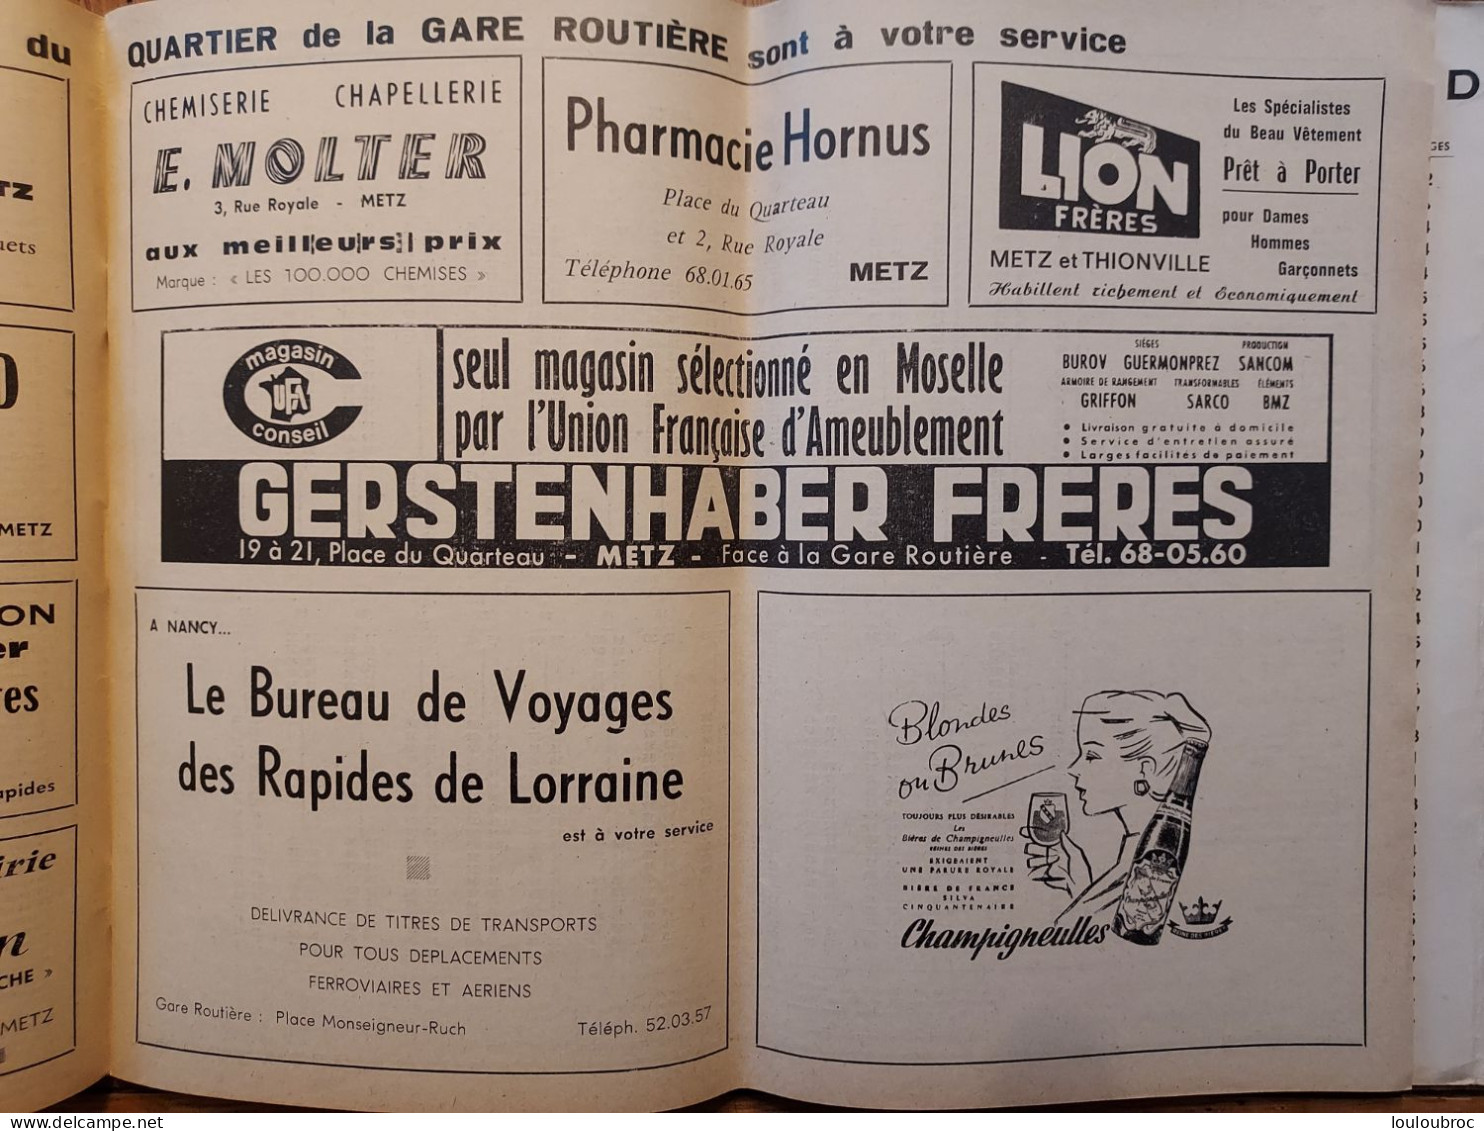 LES RAPIDES DE LORRAINE ETE 1965 HORAIRES DES AUTOBUS LIVRET DE 56 PAGES RESEAUX METZ-NANCY - Europe